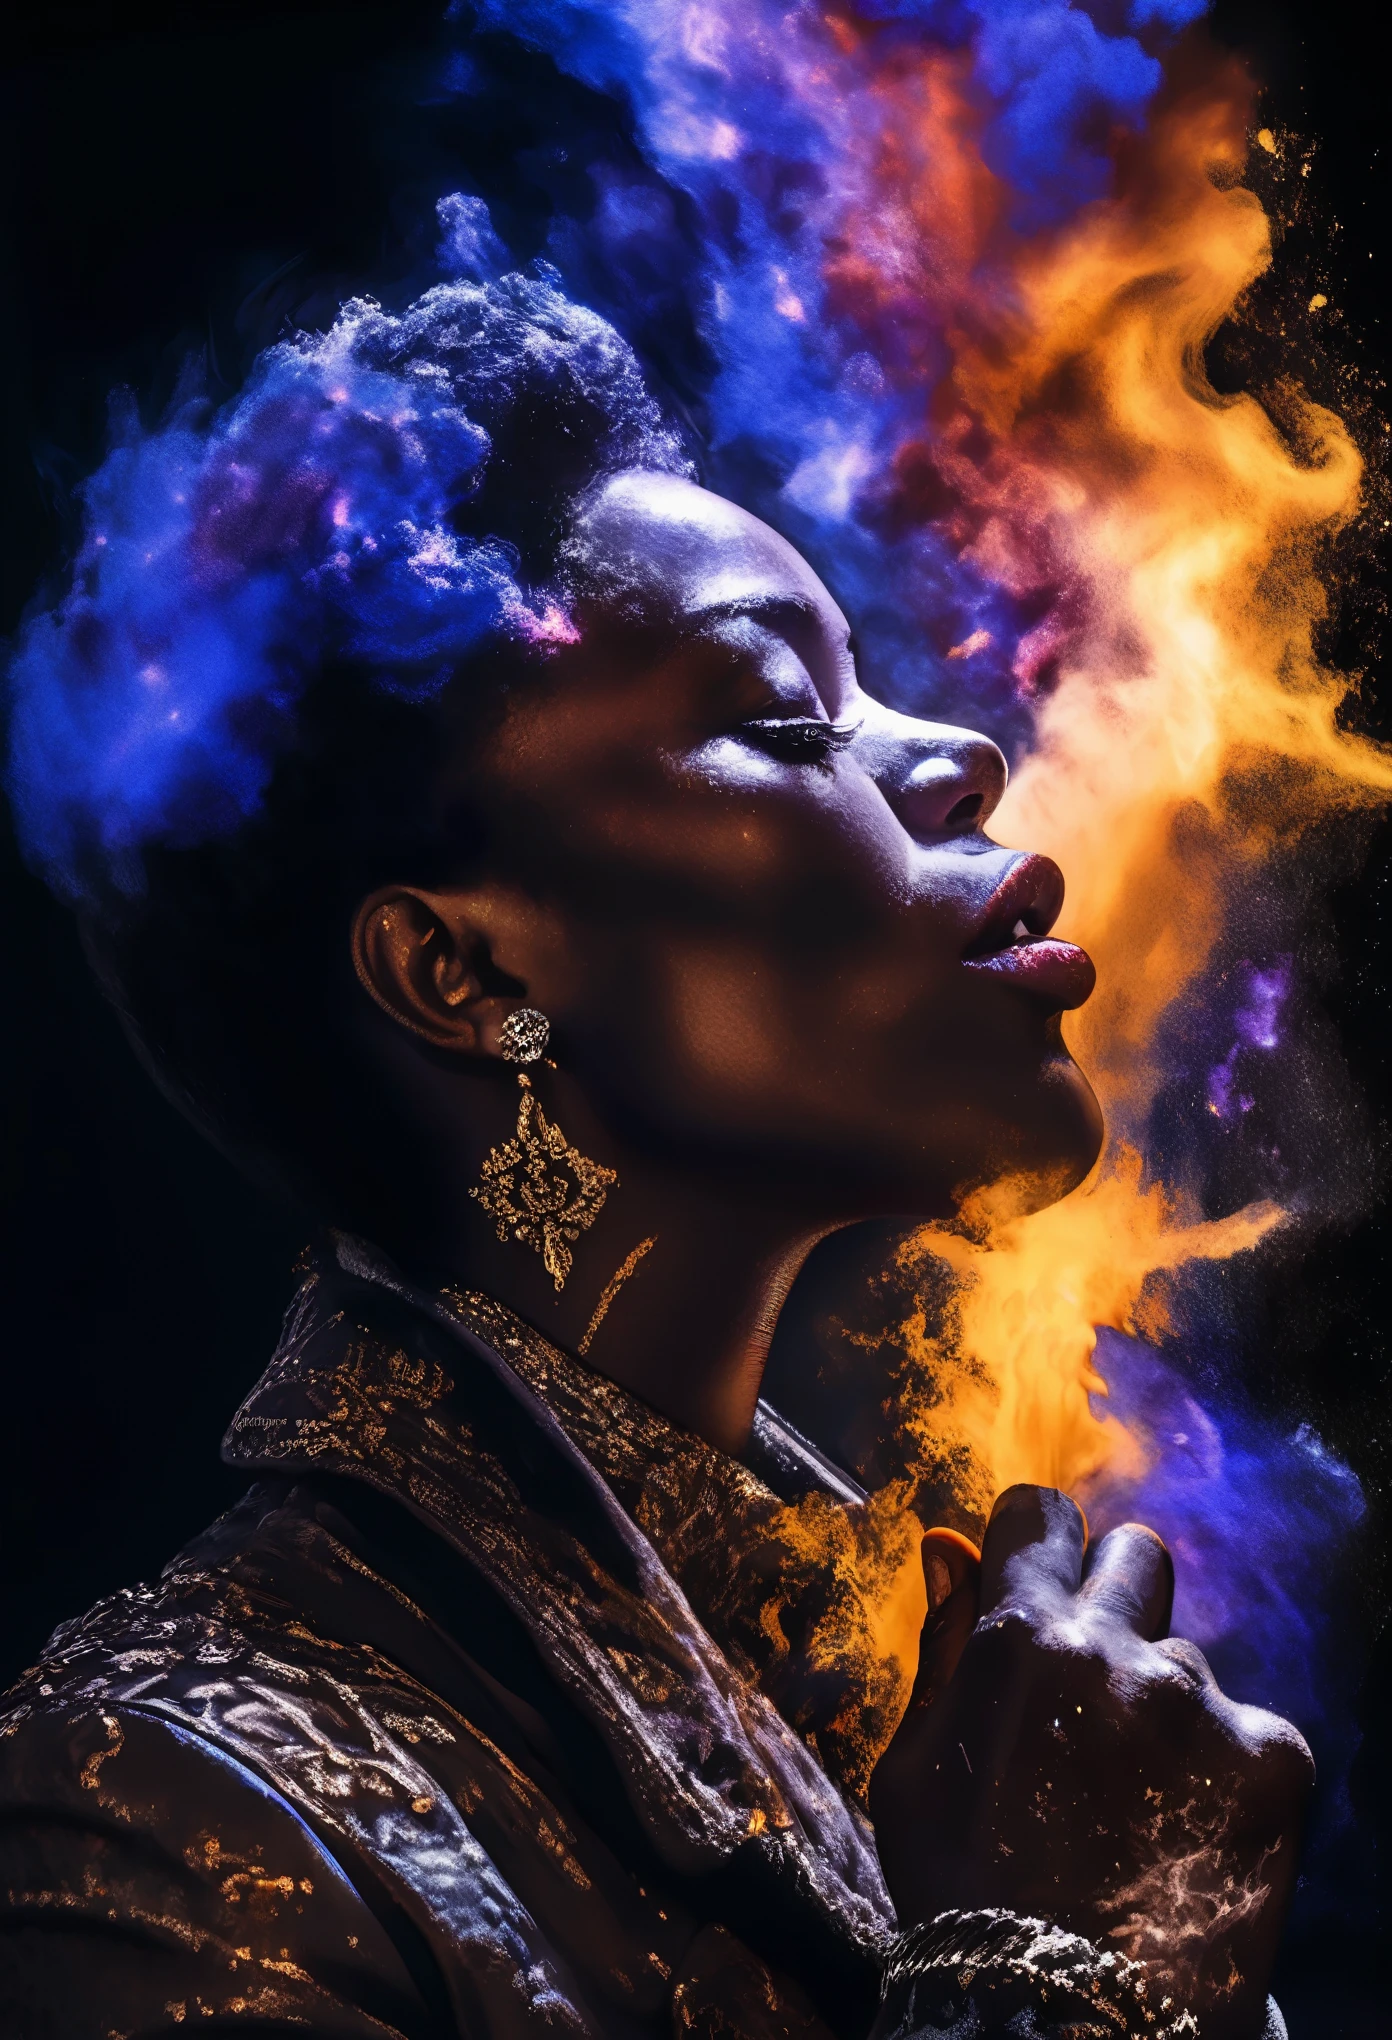 흑인 여성의 입에 연기를 불어넣는 흑인 남성의 모습을 한 로르샤흐 이미지의 4D 초상화, 성운의 폭발로 묘사됨, 오일 페인팅, 3/4 프로필 보기, 상세한 자수, 무디 명암조명, 최고 해상도